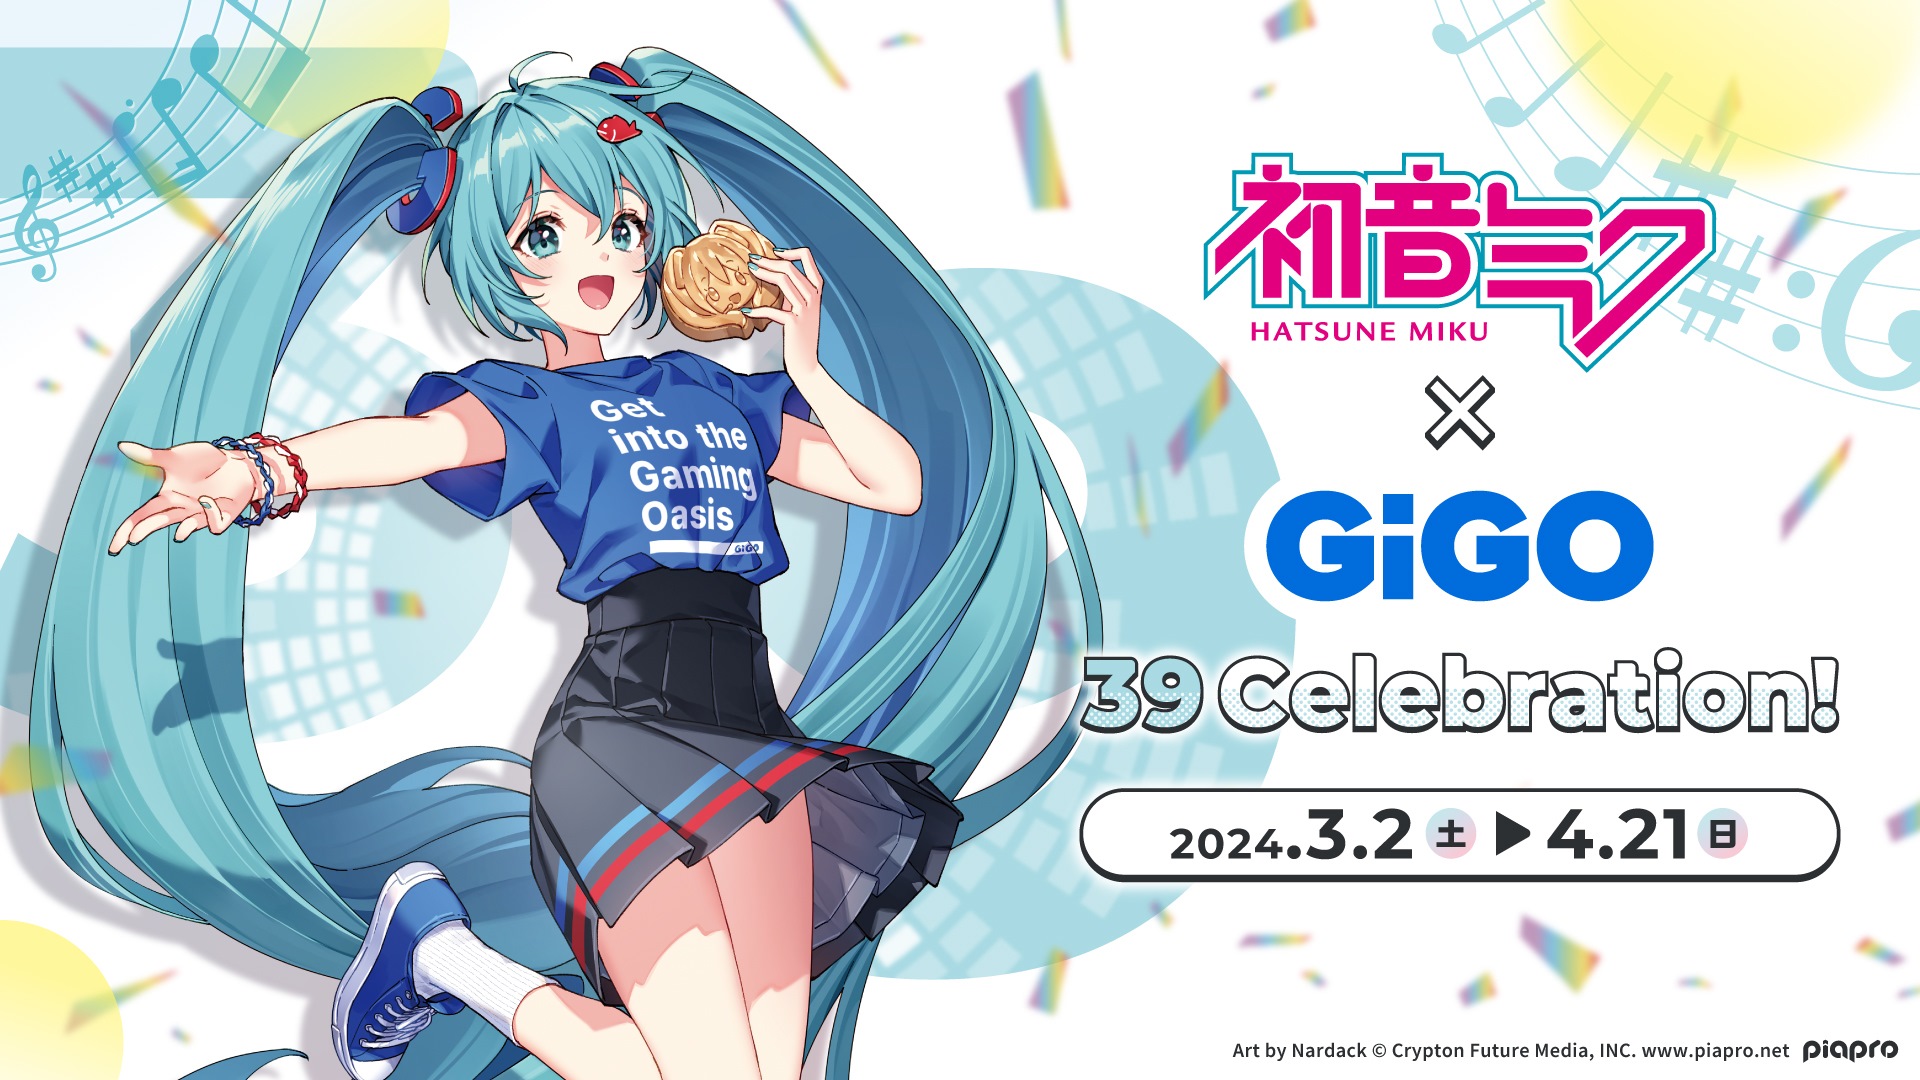 初音ミク×GiGO　39 Celebration！